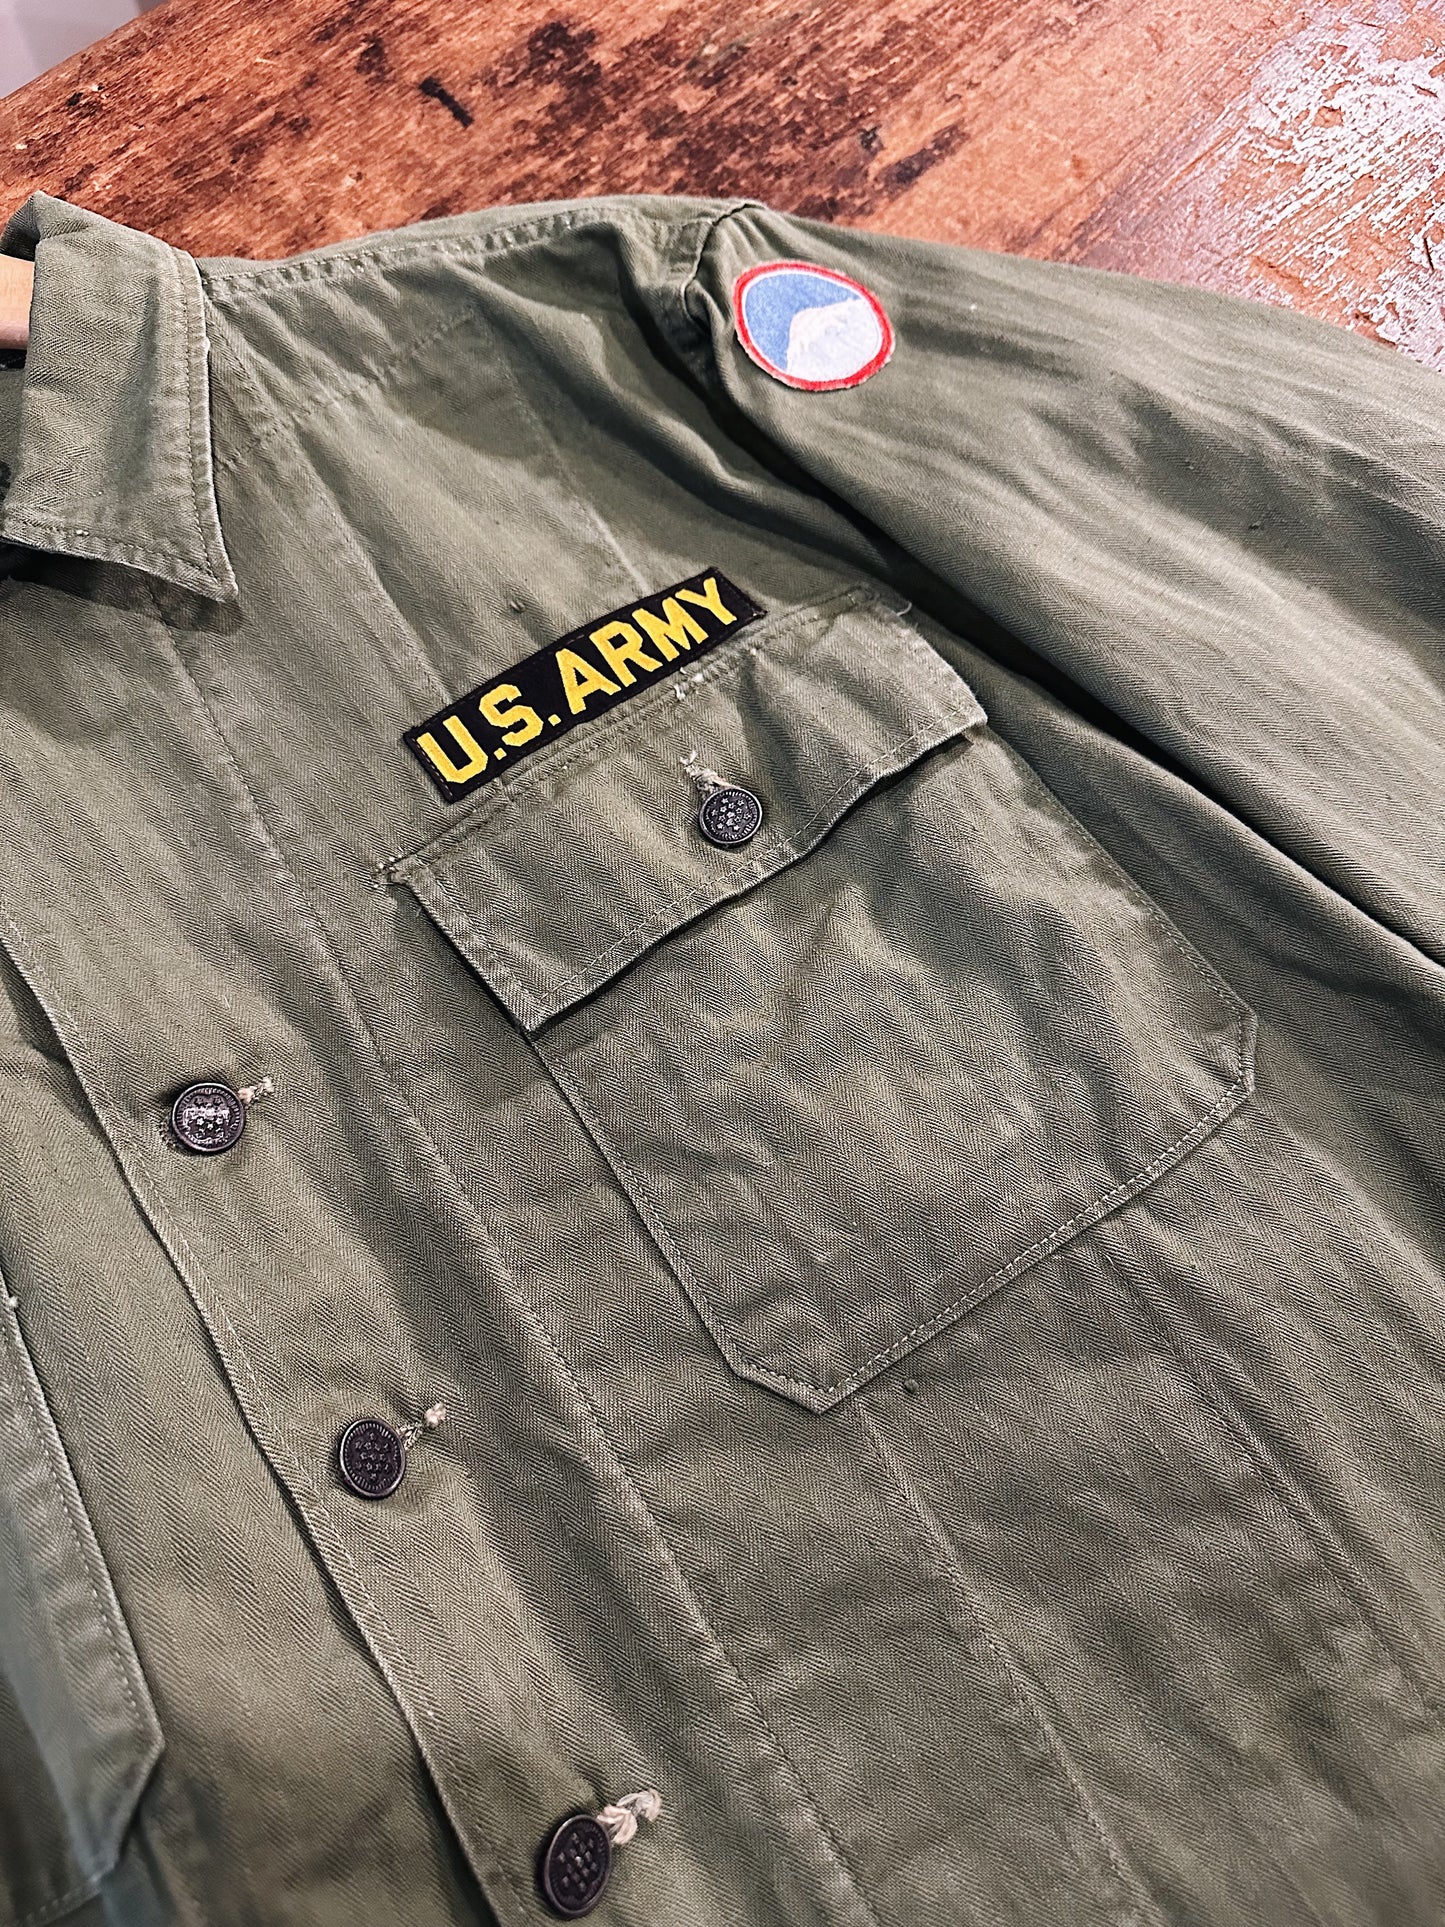 US Army hbt shirt front details 2